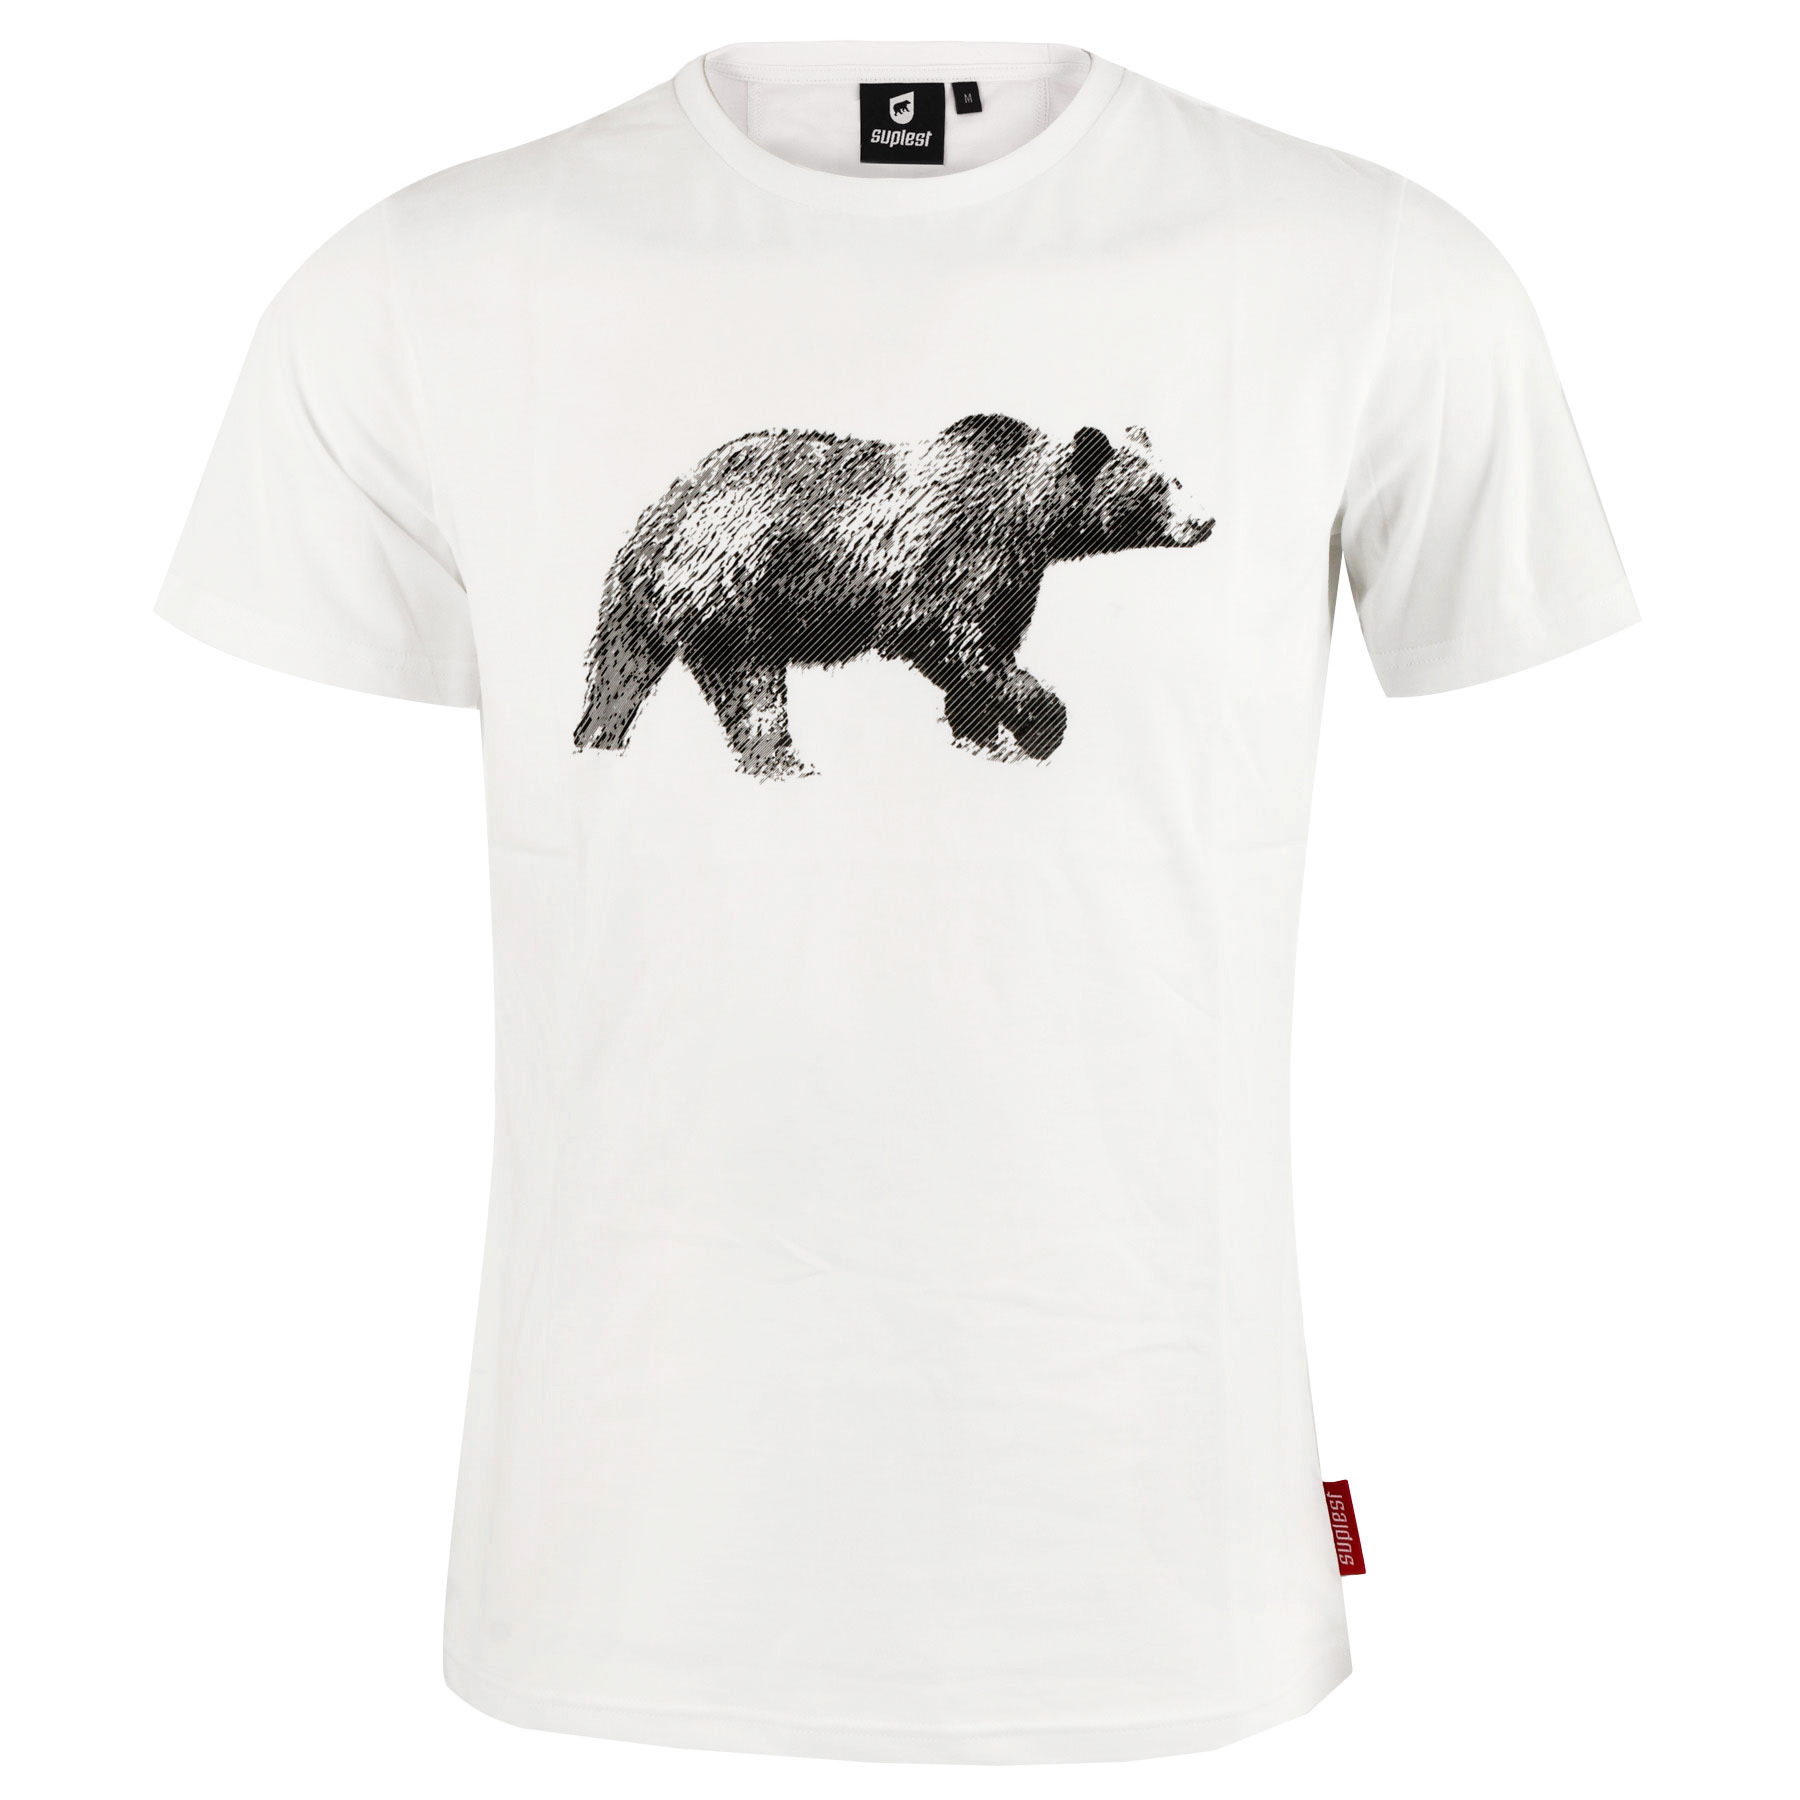 Produktbild von Suplest Bear T-Shirt Herren - weiß 05.055.